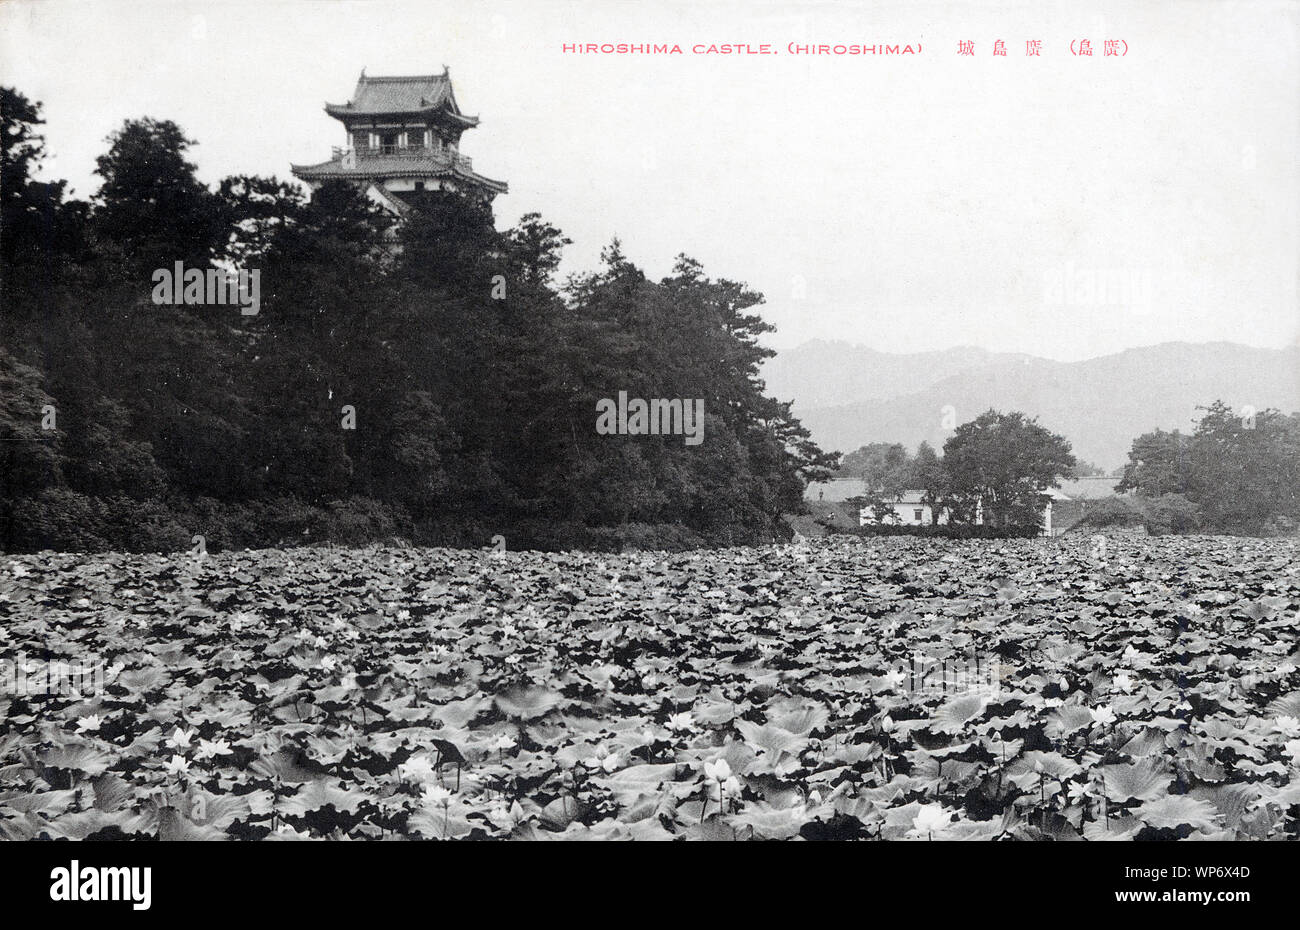 [1930er Jahre Japan - Hiroshima Castle] - Hiroshima Castle und die umgebenden Wassergraben in Hiroshima. Hiroshima Castle wurde in den 1590 Jahren gebaut. Es war in der Atombombe 1945 zerstört und 1958 wieder aufgebaut. Das Replikat dient jetzt als Museum von Hiroshima die Geschichte vor dem Zweiten Weltkrieg. 20. jahrhundert alte Ansichtskarte. Stockfoto